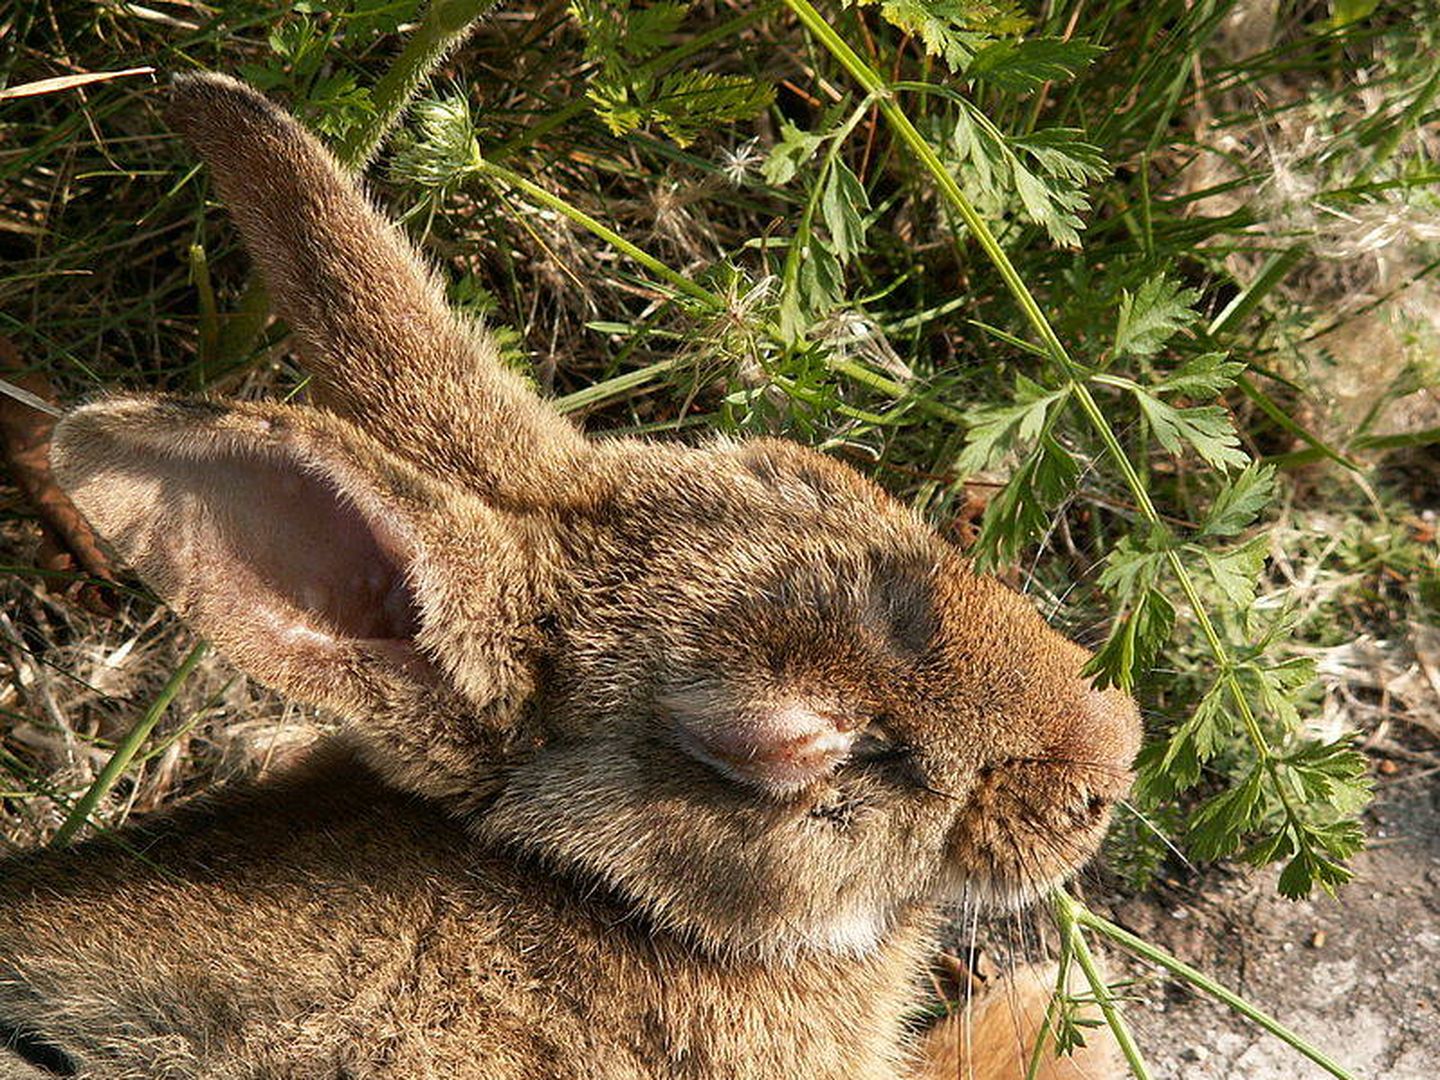 Un conejo con síntomas de mixomatosis come una zanahoria en Holanda. (Piet Spaans)